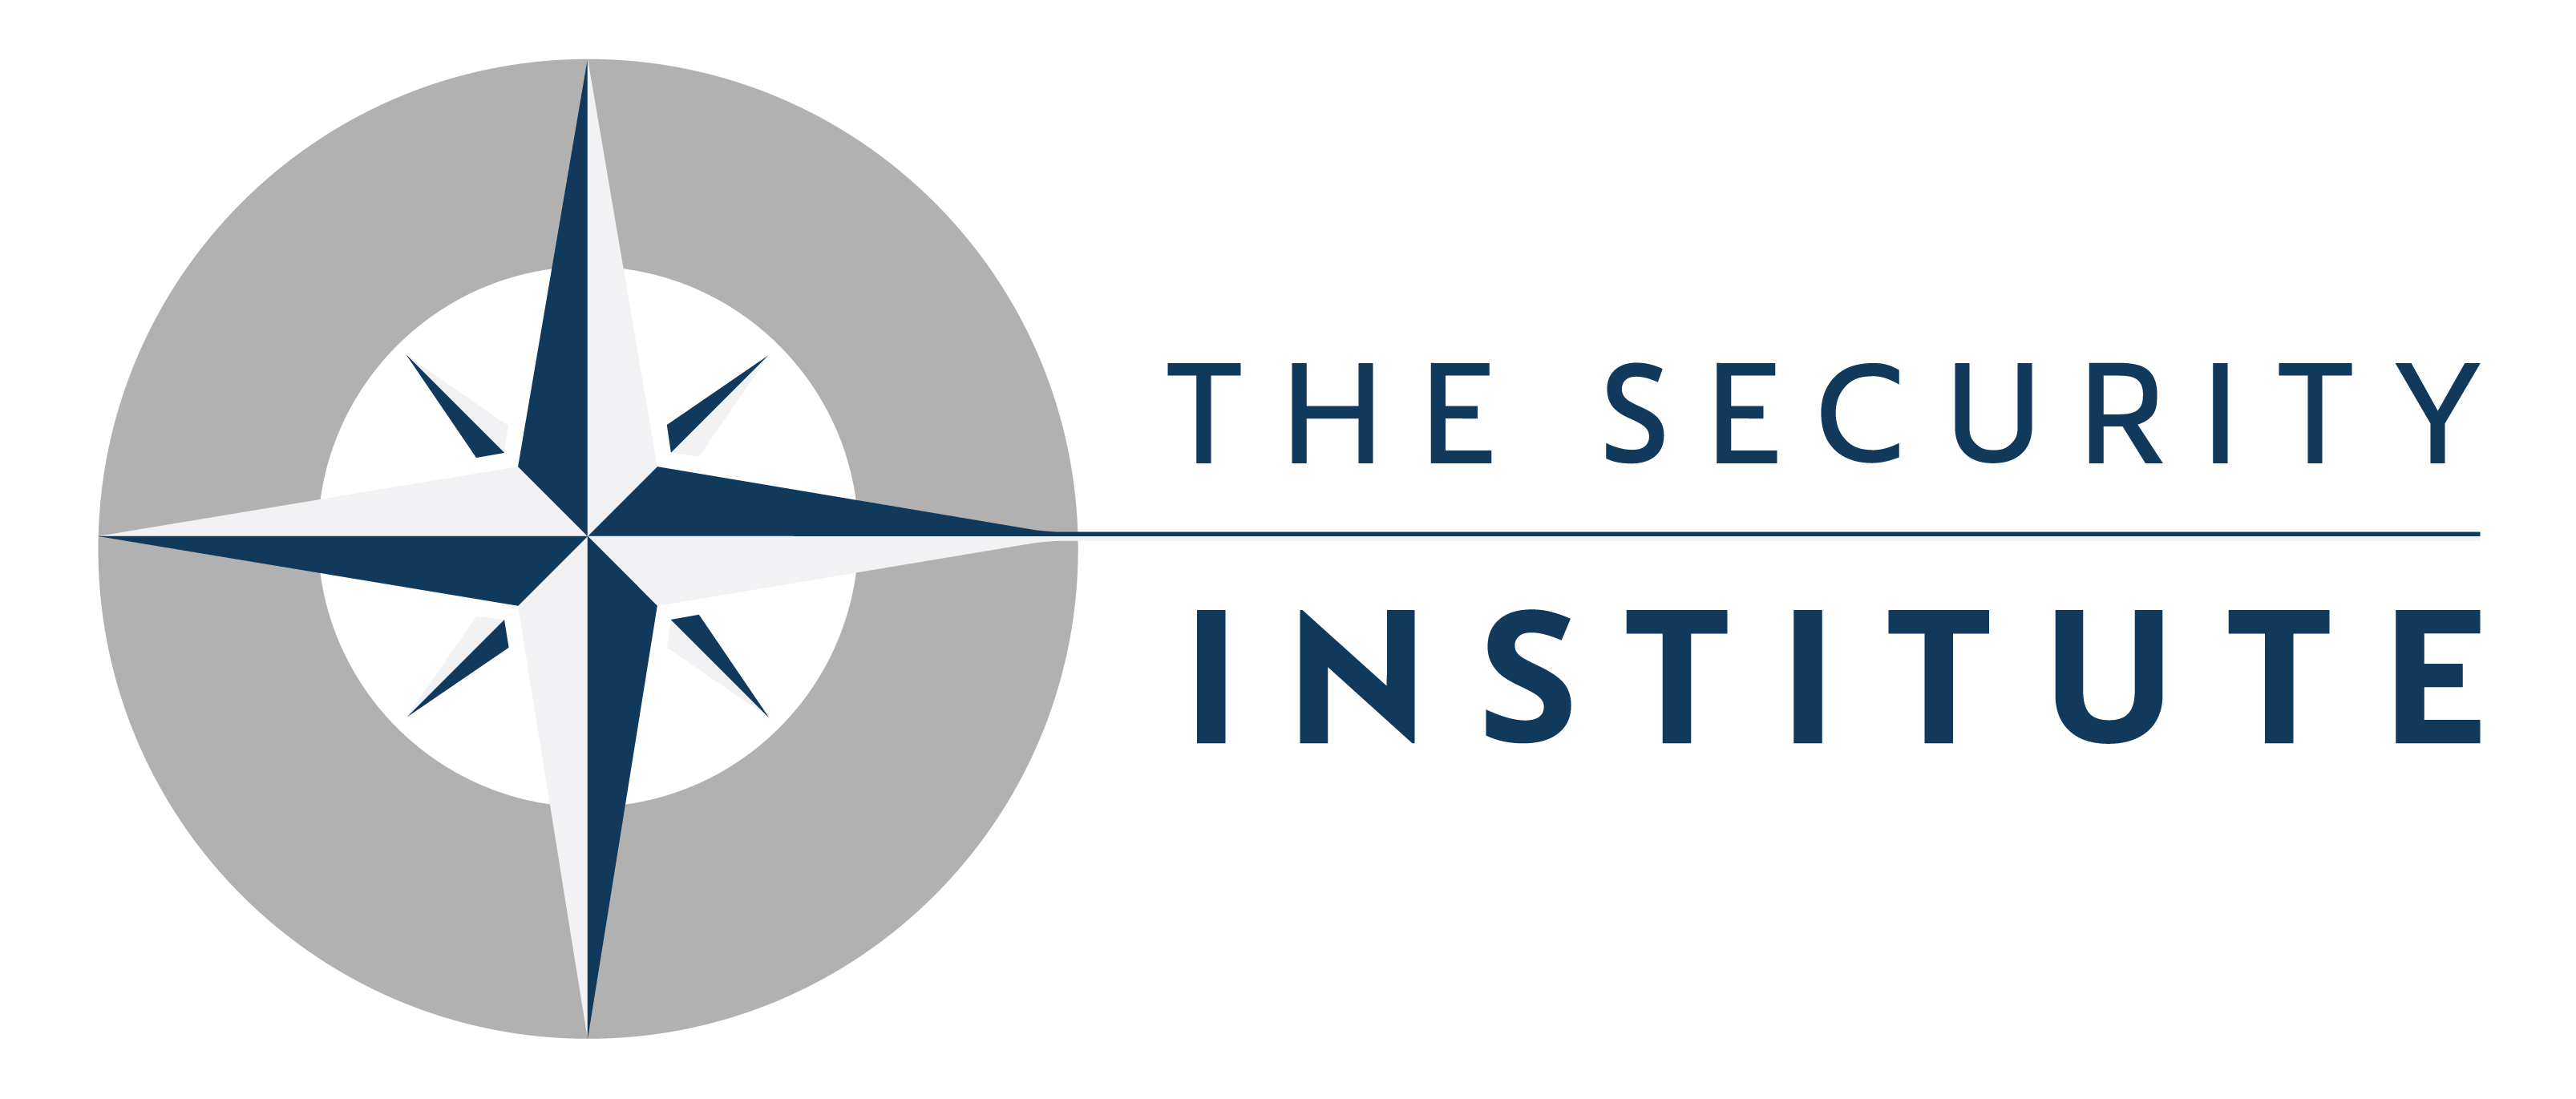 The Security Institute